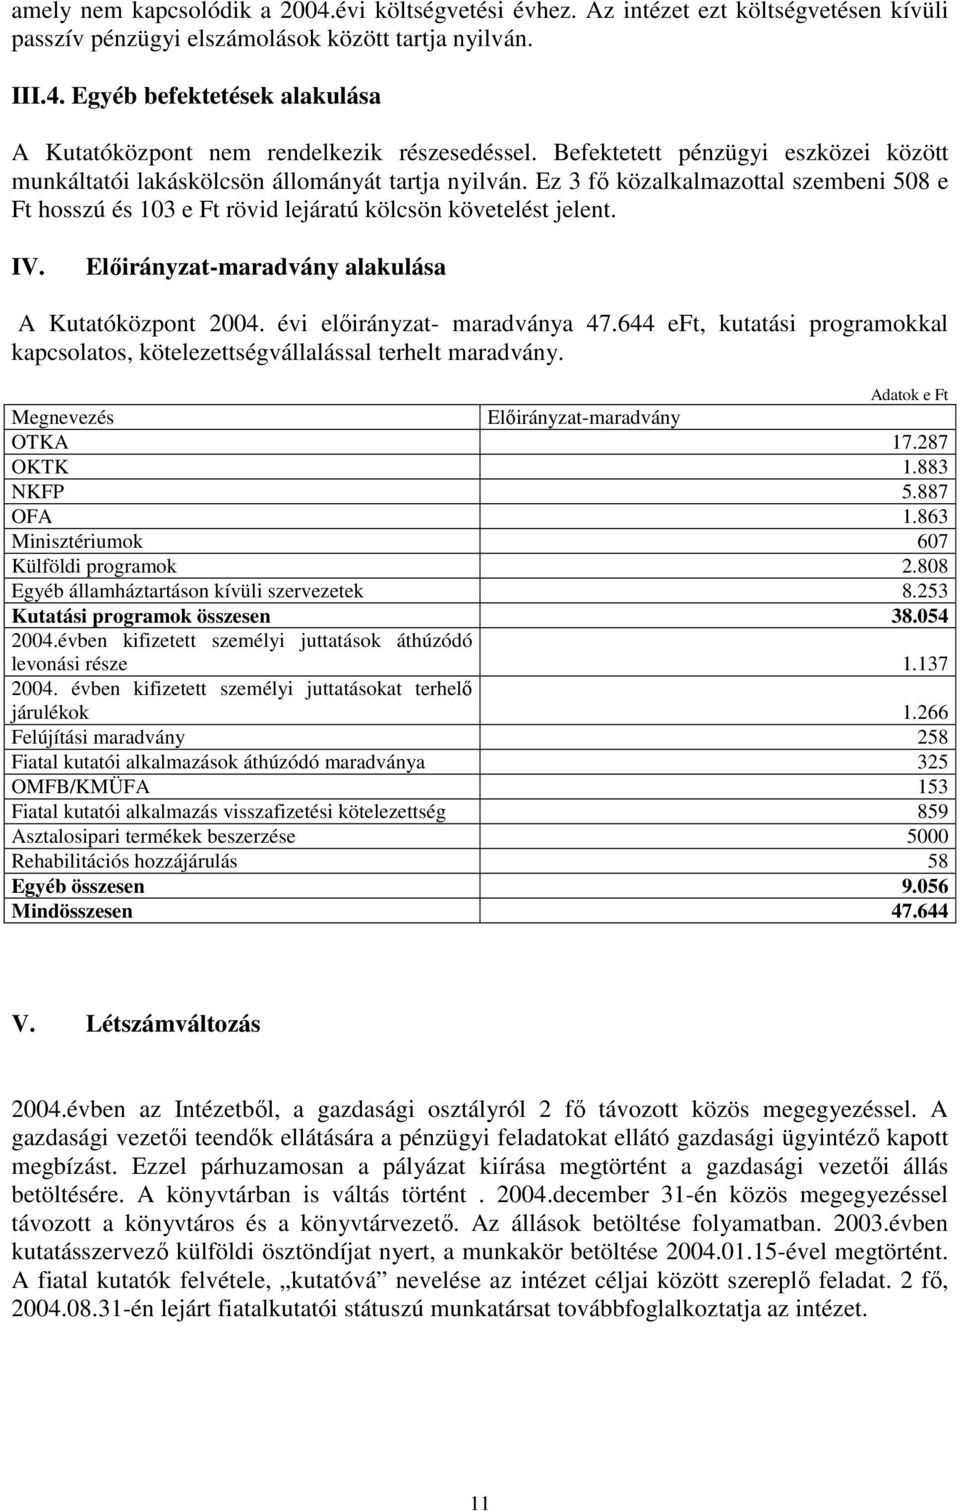 Elıirányzat-maradvány alakulása A Kutatóközpont 2004. évi elıirányzat- maradványa 47.644 eft, kutatási programokkal kapcsolatos, kötelezettségvállalással terhelt maradvány.